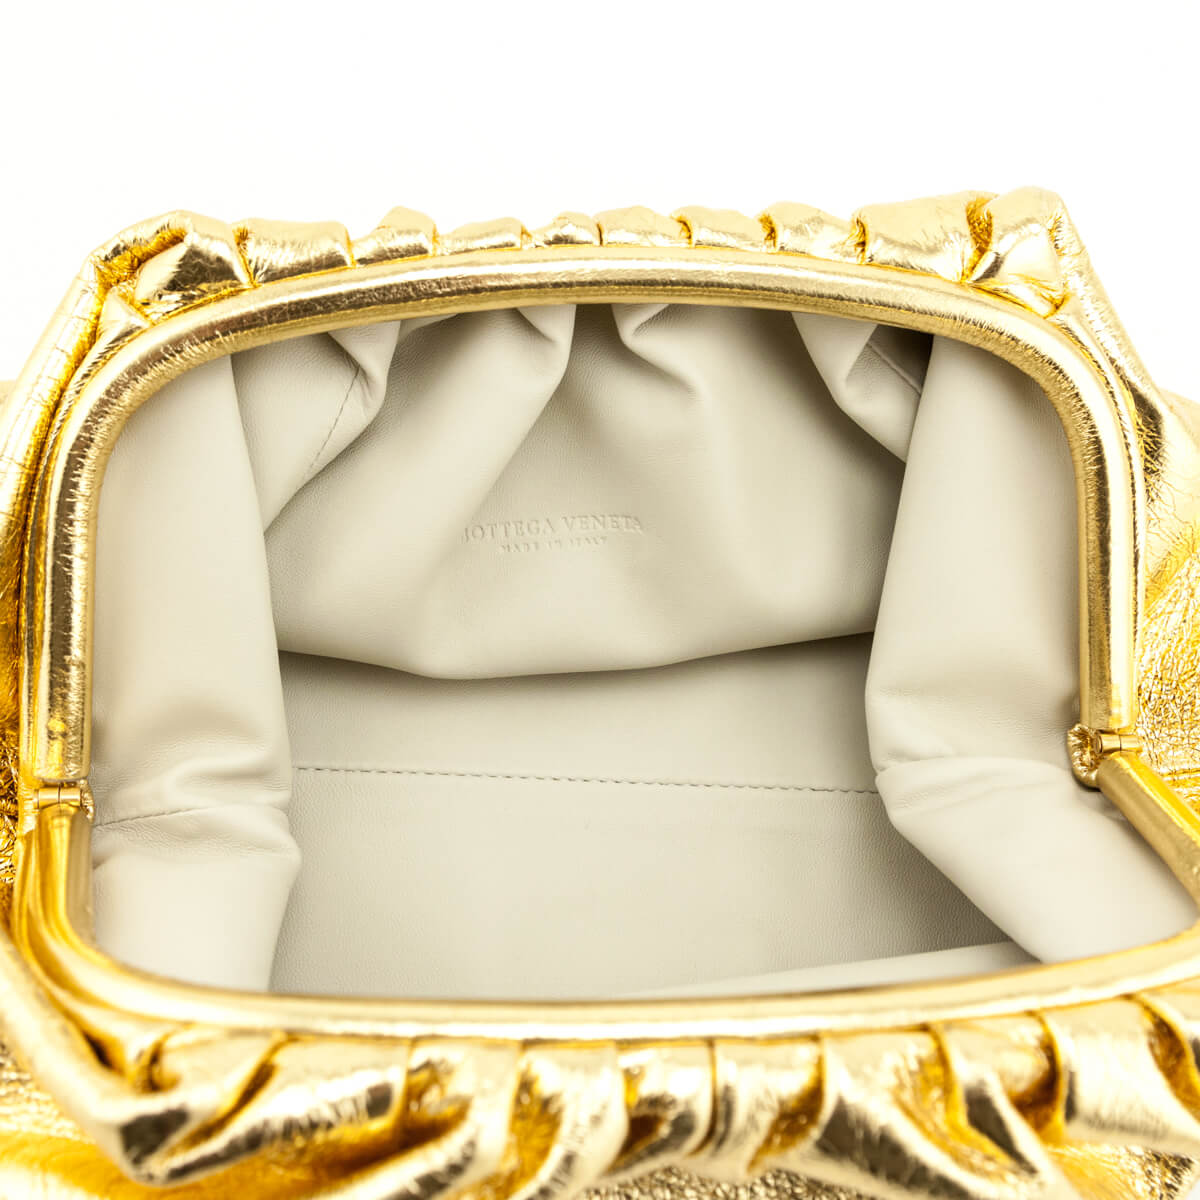 Bottega Veneta golden pouch clutch Archives - STYLE DU MONDE